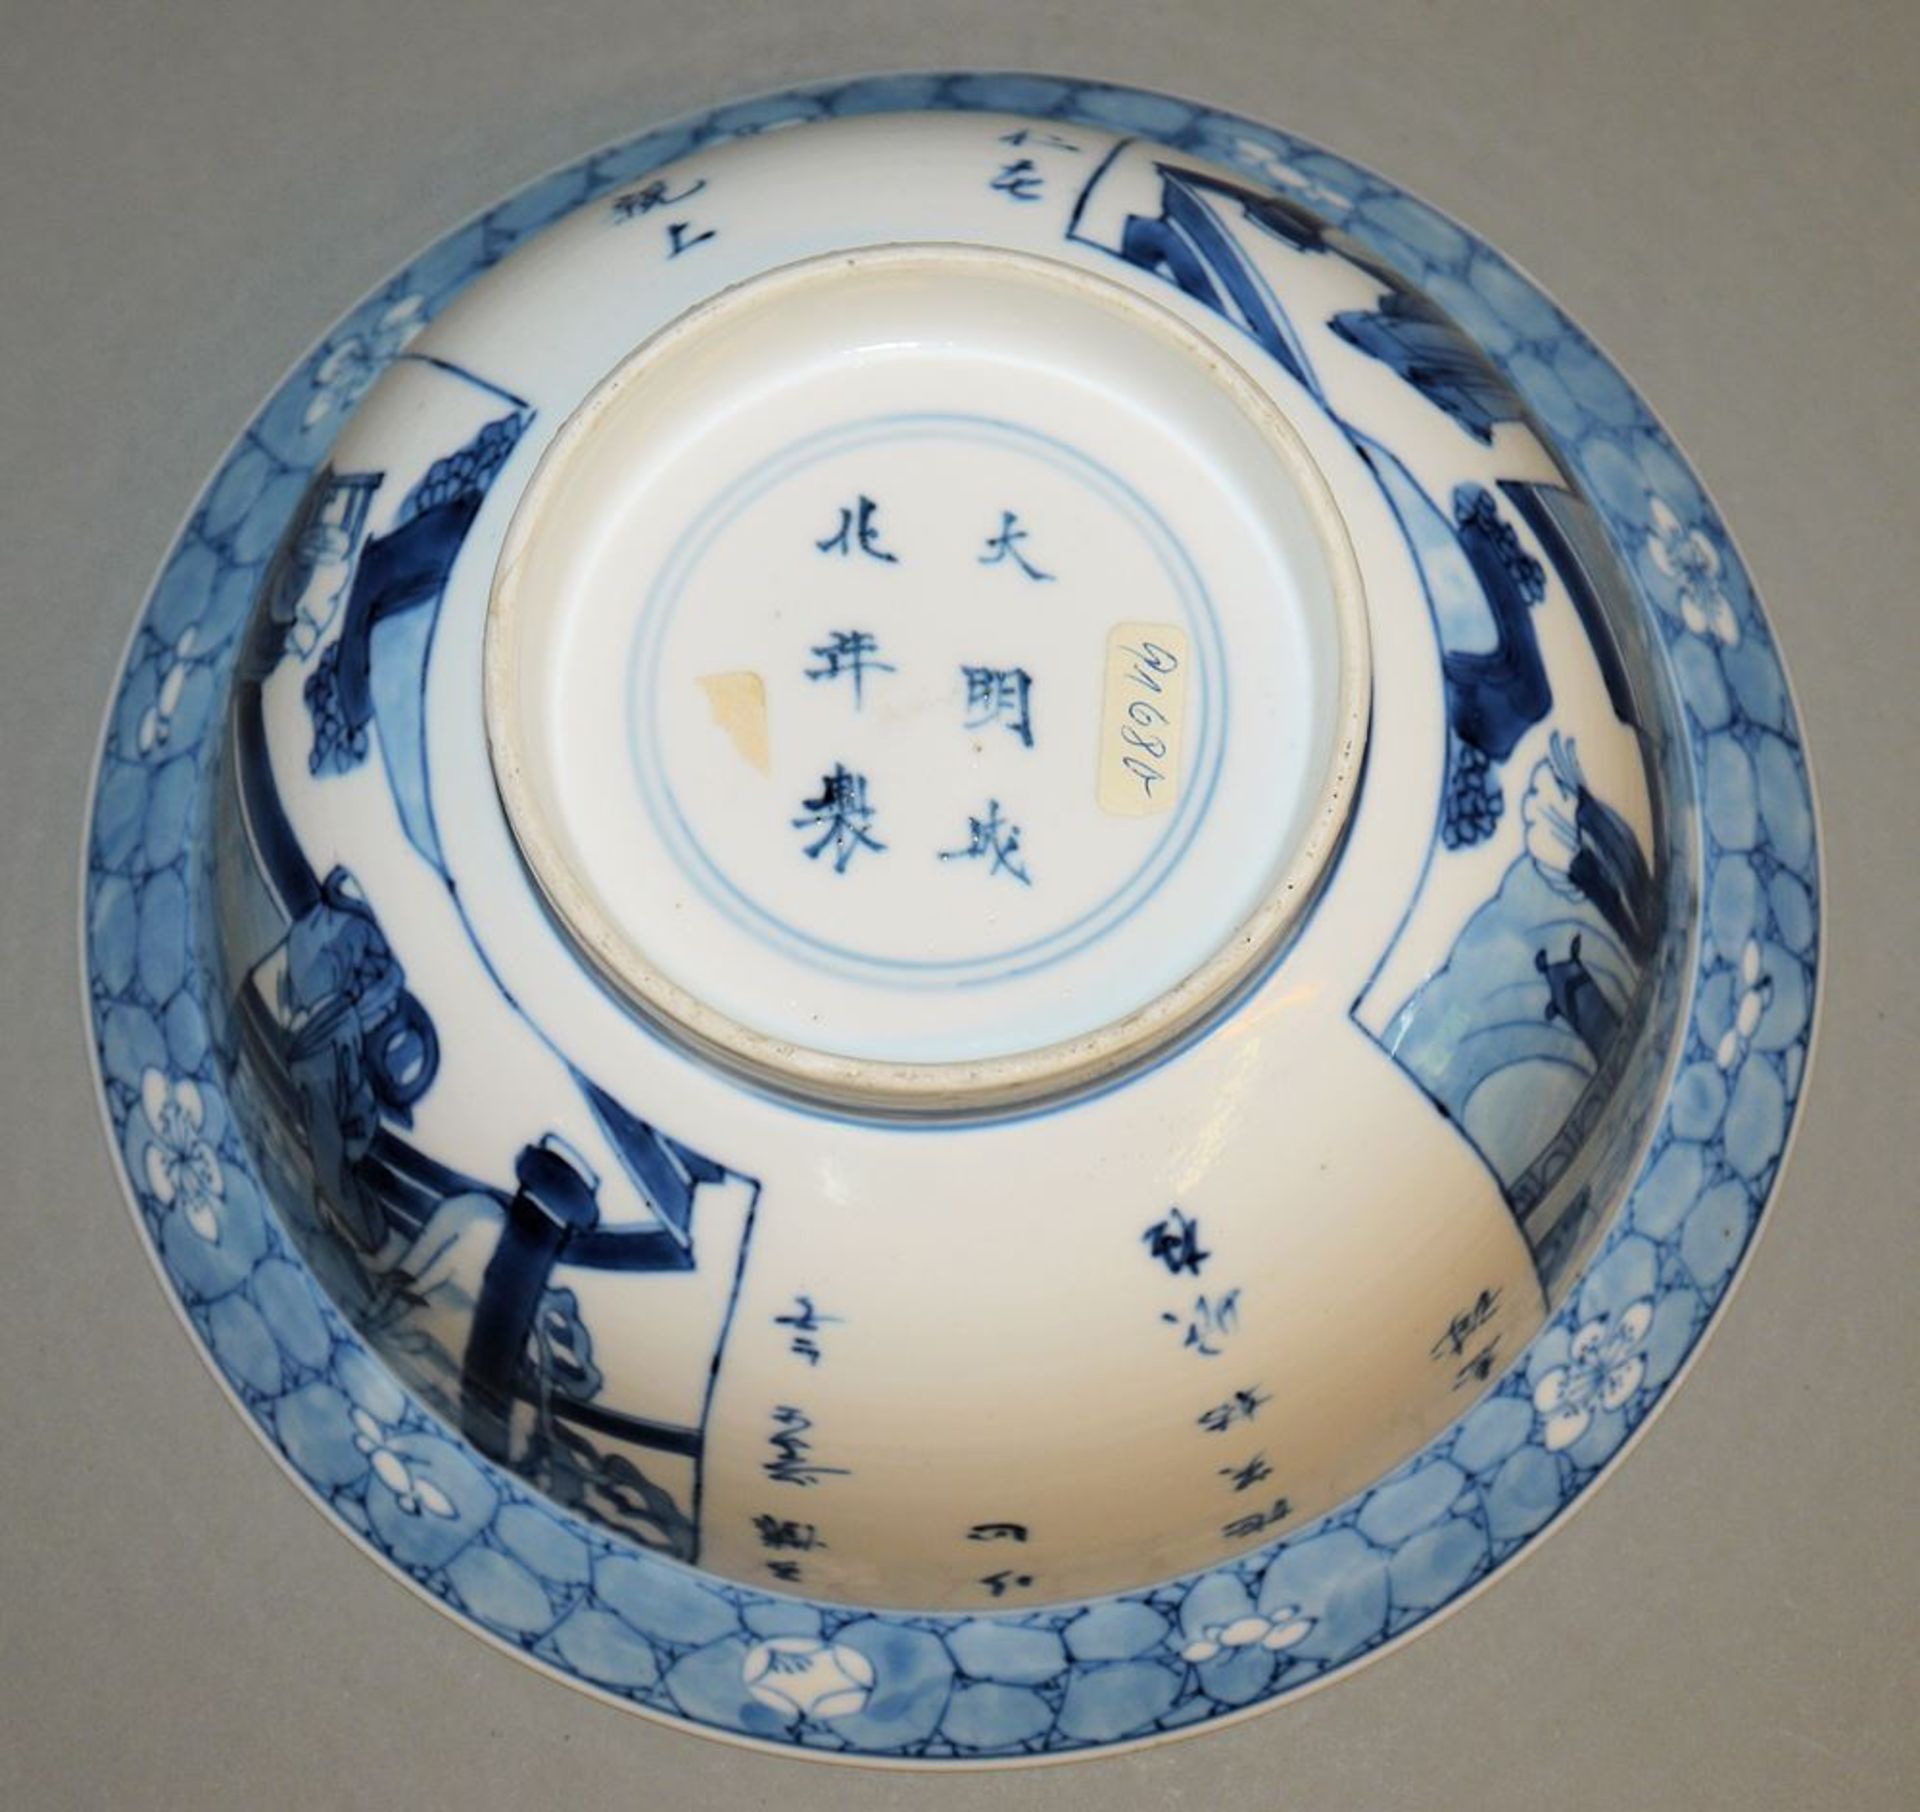 Blauweiß-Speiseschale der Kangxi-Zeit, China um 1700 - Bild 4 aus 4